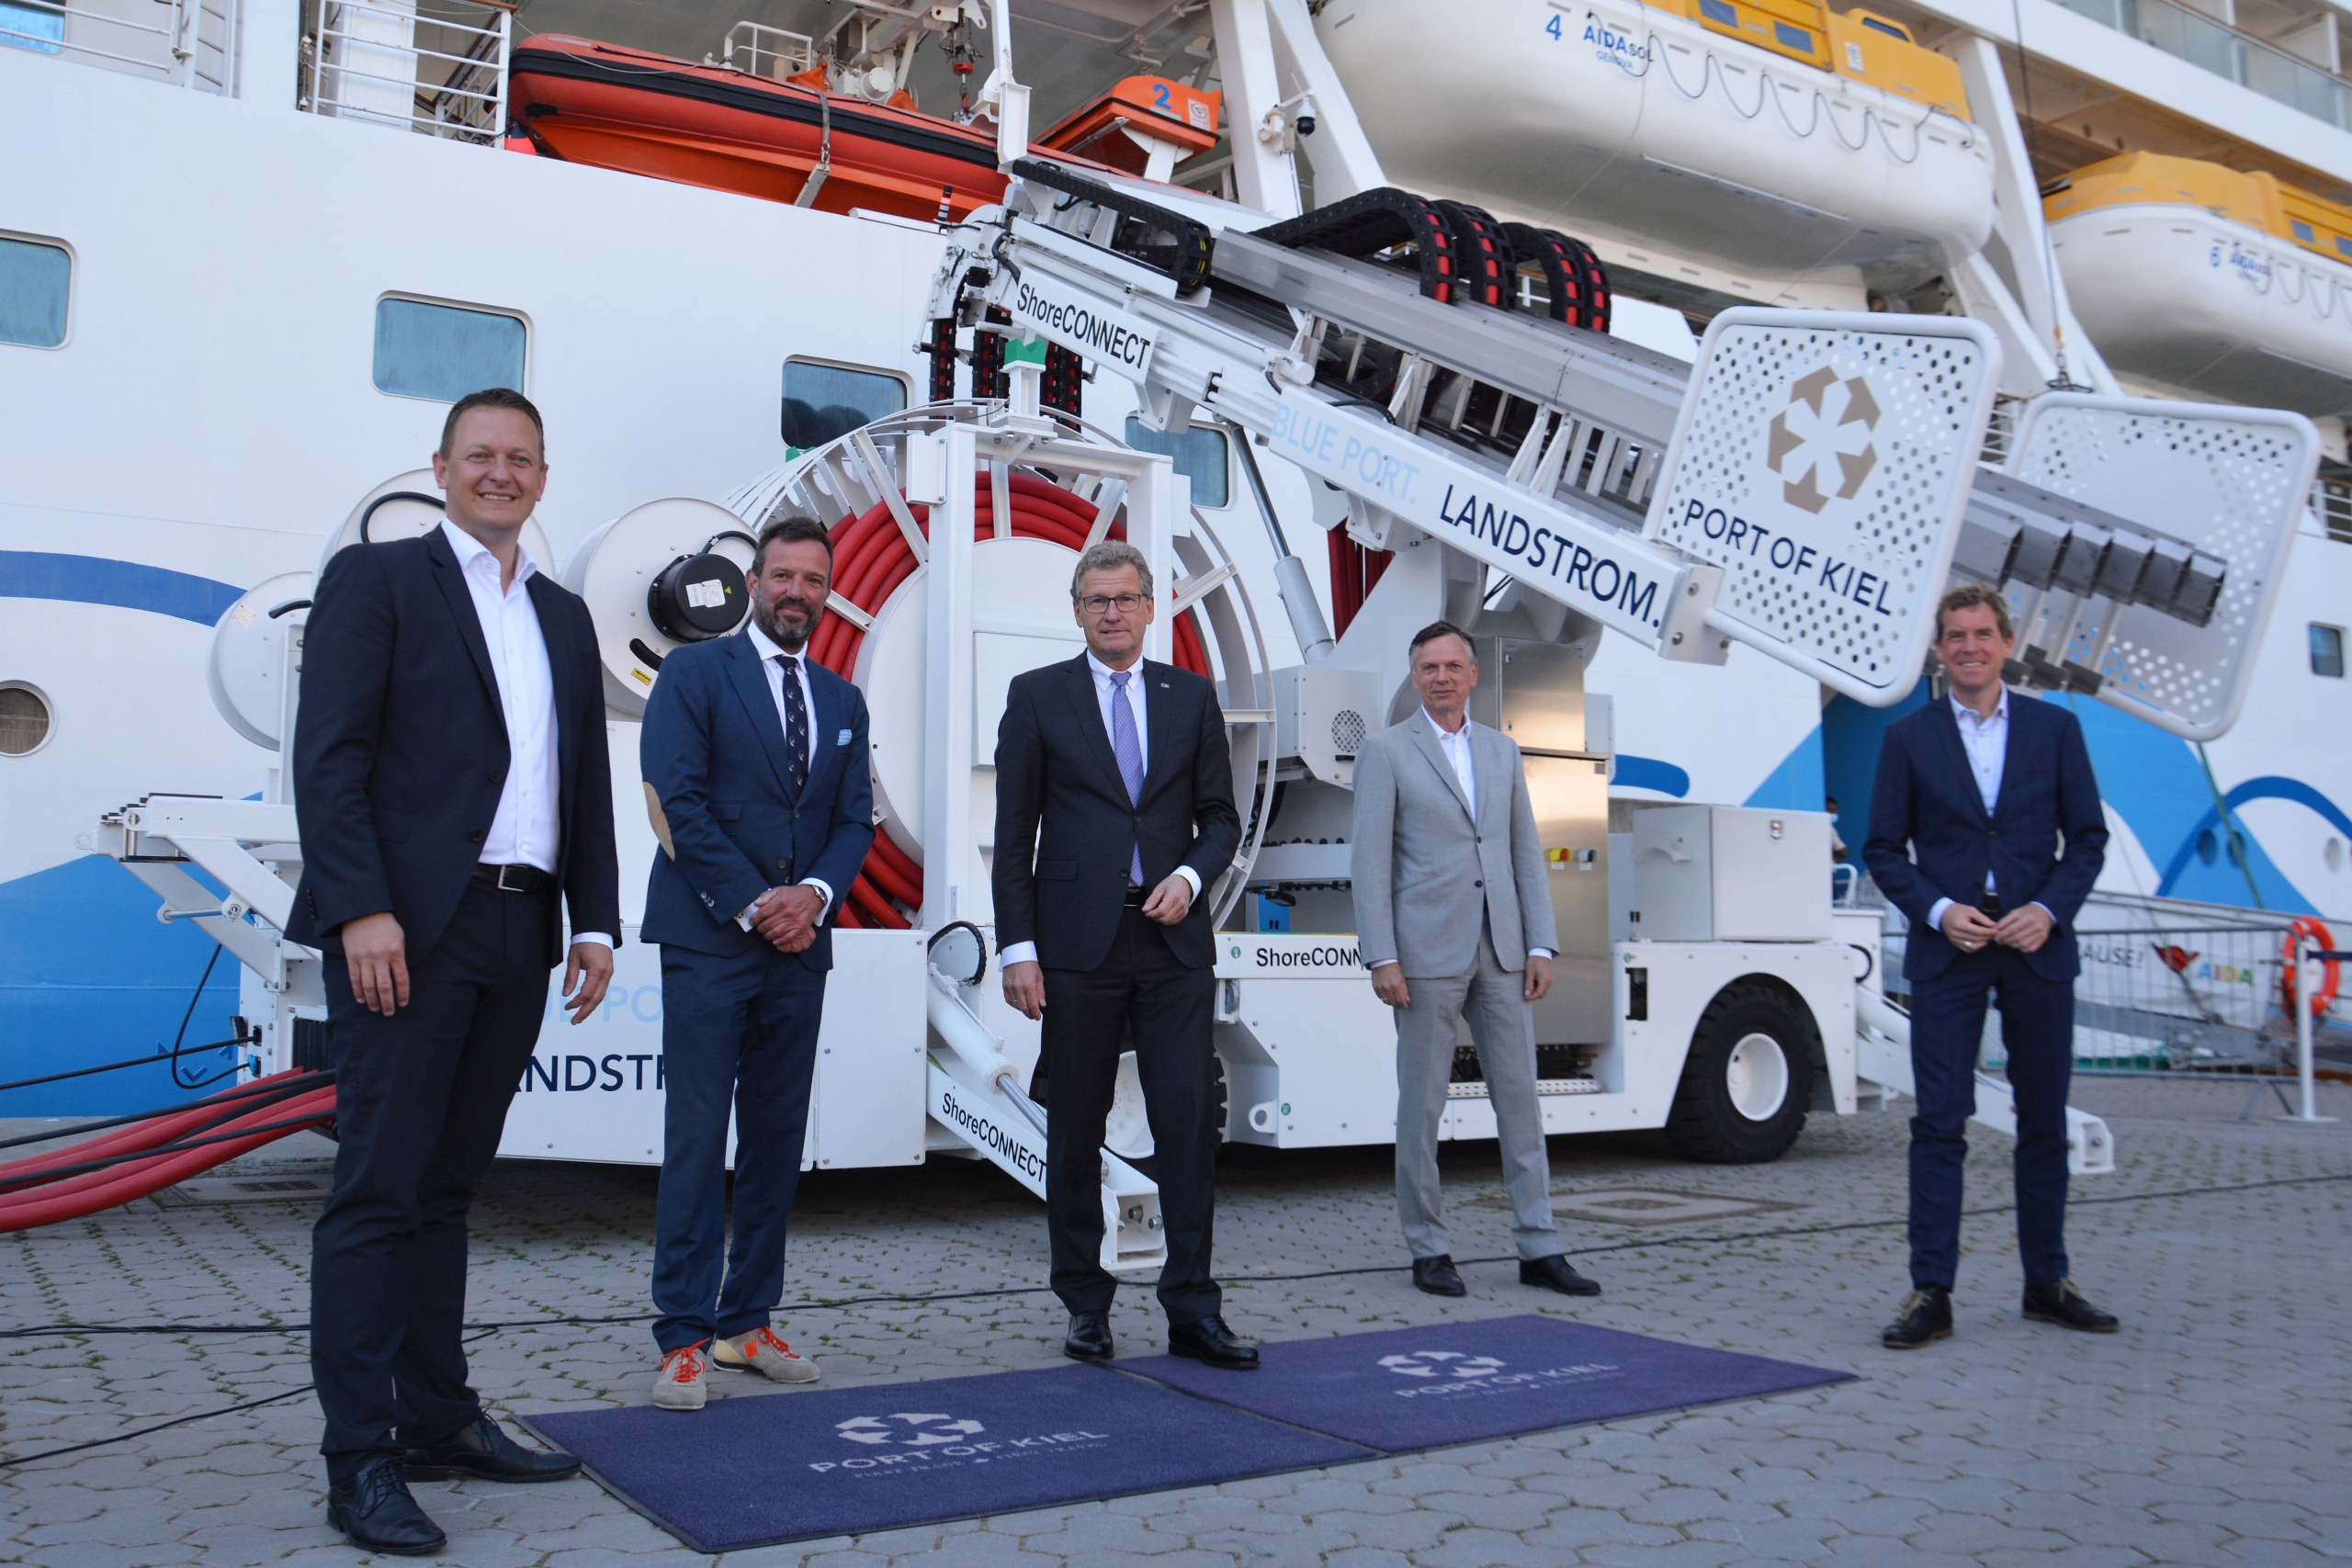 Freuen sich über die Eröffnung der Landstromanlage in Kiel: Das AIDA-Team